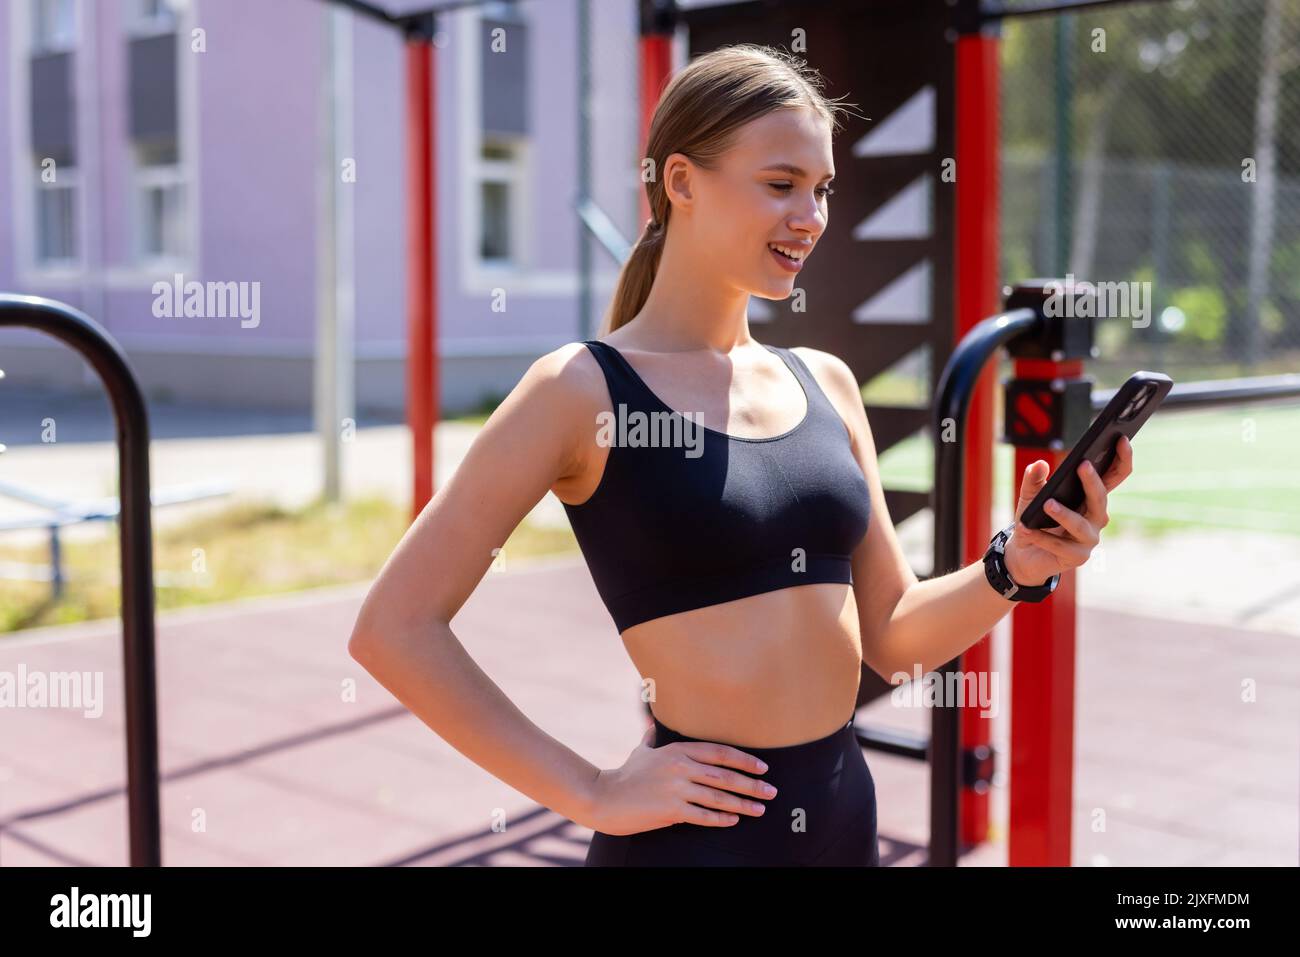 Eine athletische Frau, bevor sie mit dem Laufen beginnt, ihre Smartphone-App und ihr Fitnesszubehör aufstellt Stockfoto